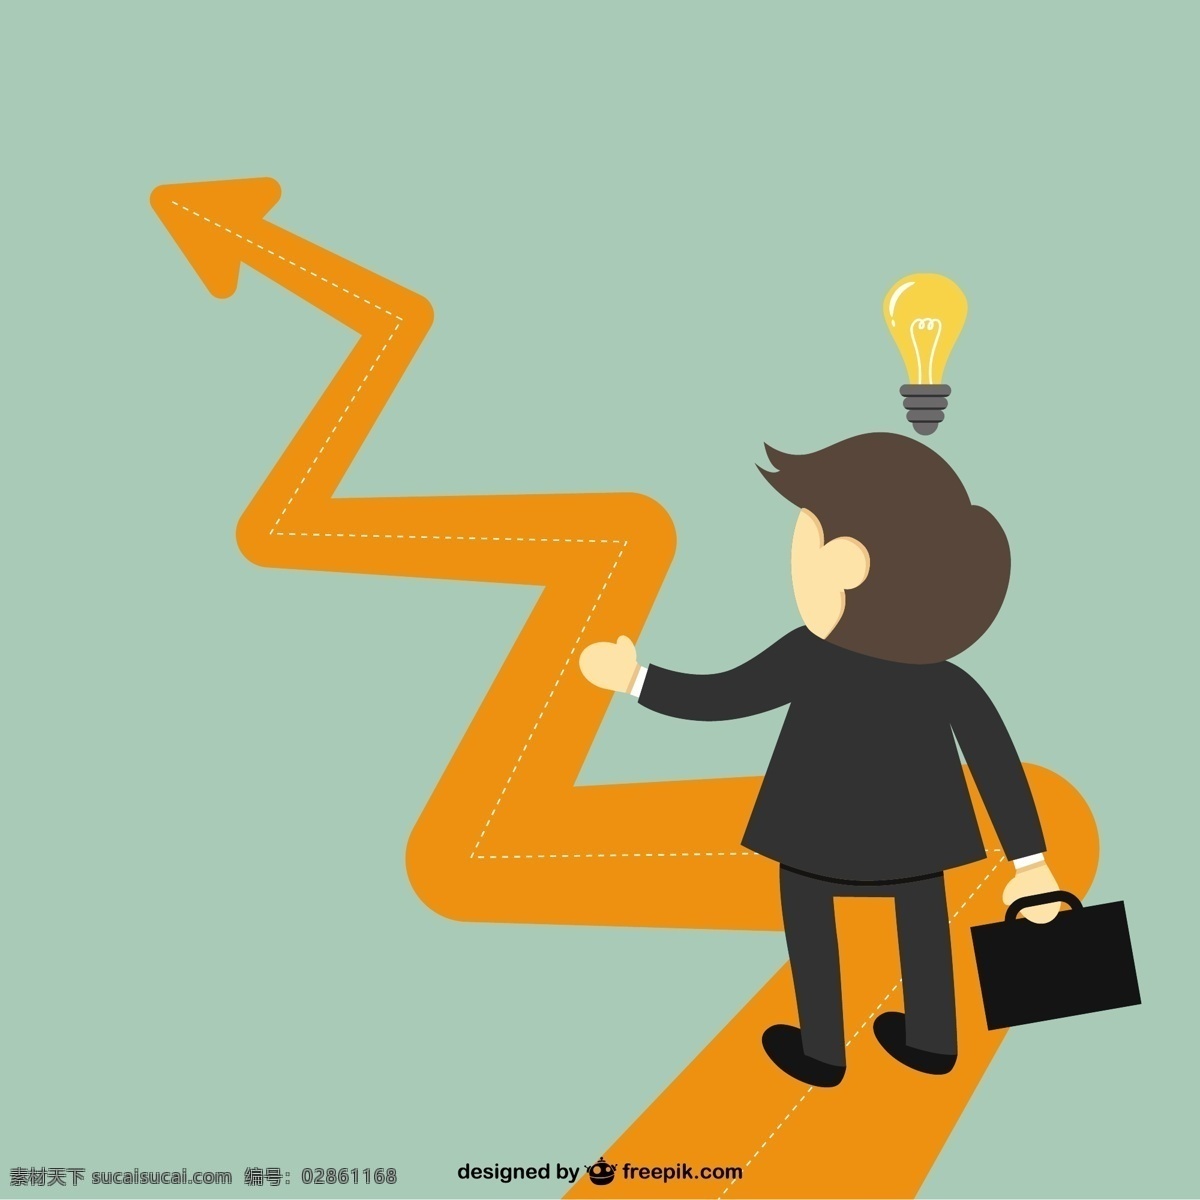 成功 经营理念 商业 道路 理念 灯泡 思考 路径 企业家 灵感 利润 上升 橙色